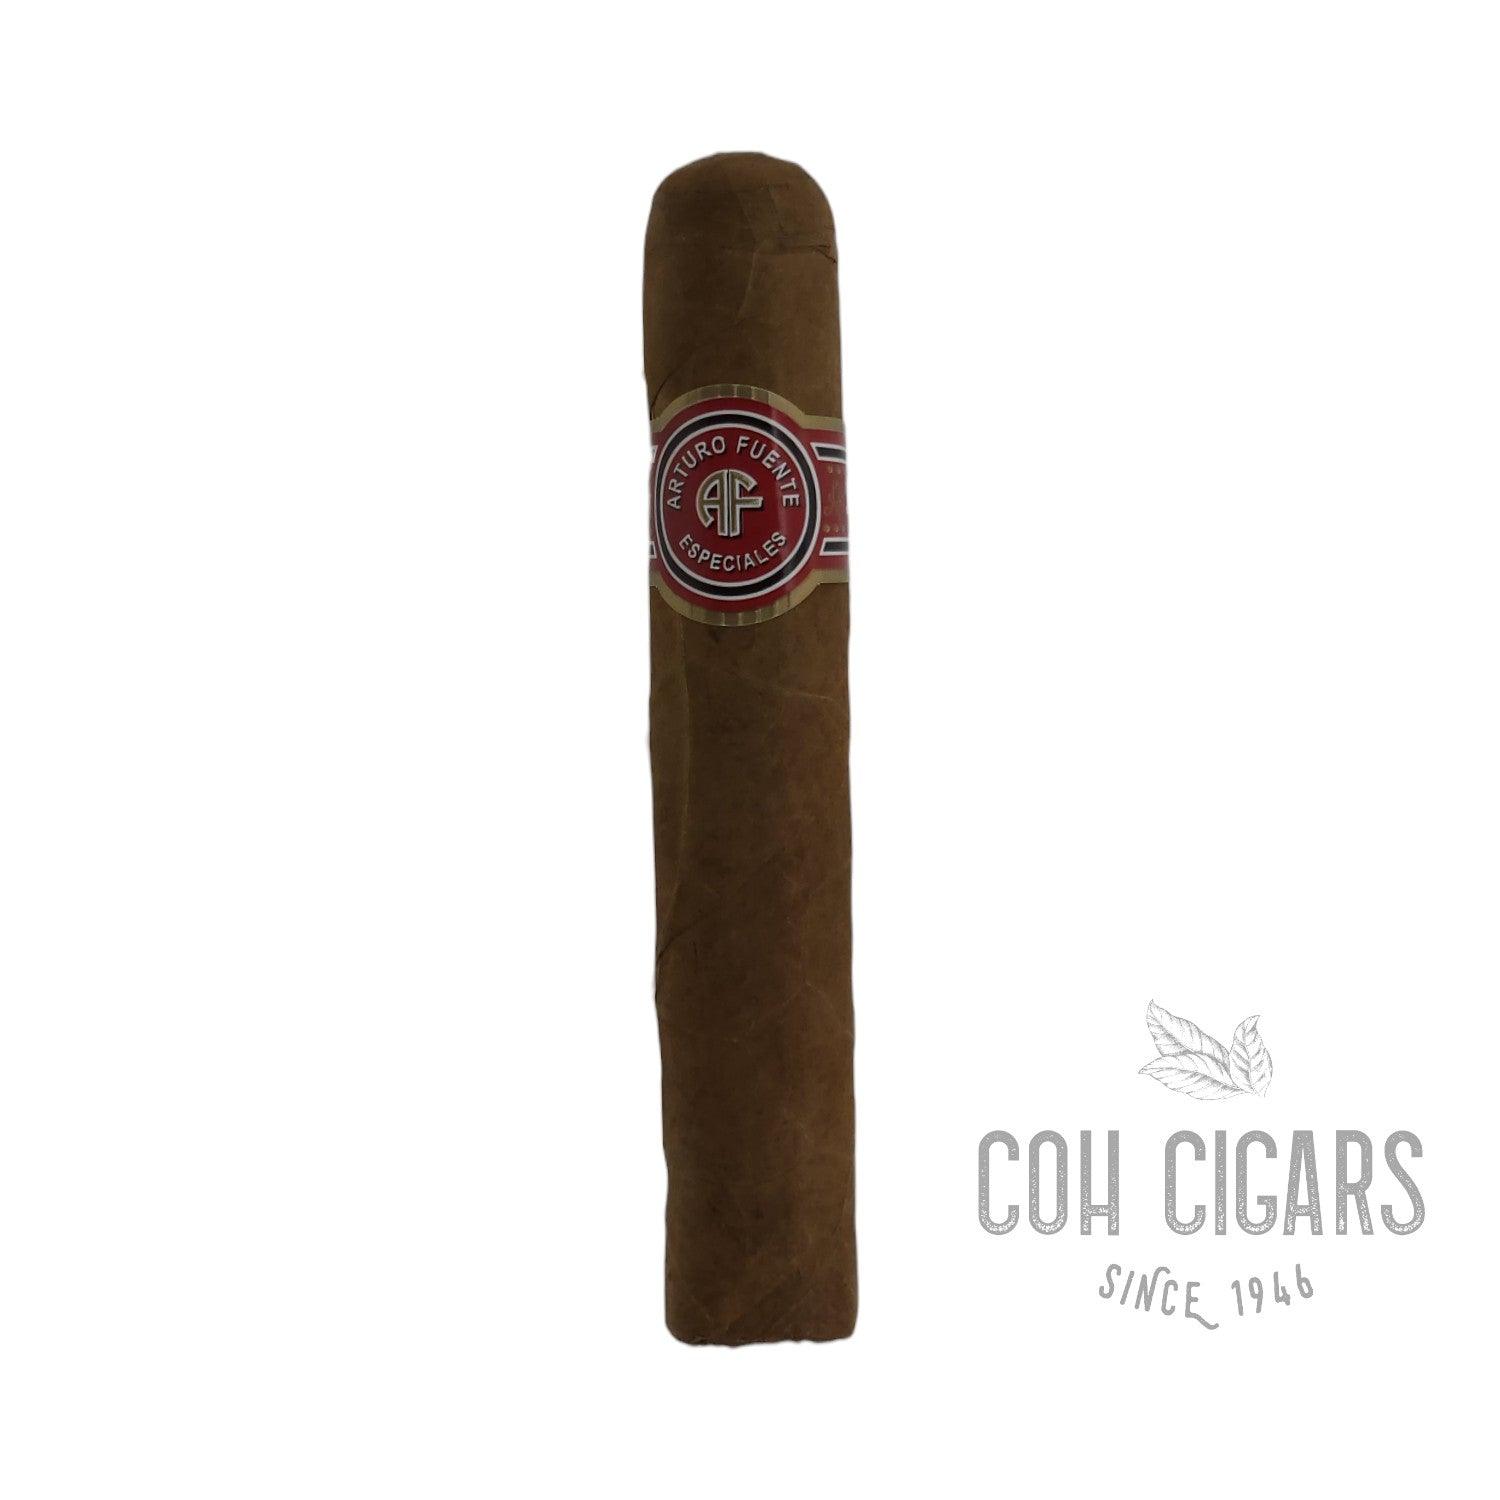 Arturo Fuente Cigar | Conquistadores | Box 30 - HK CohCigars